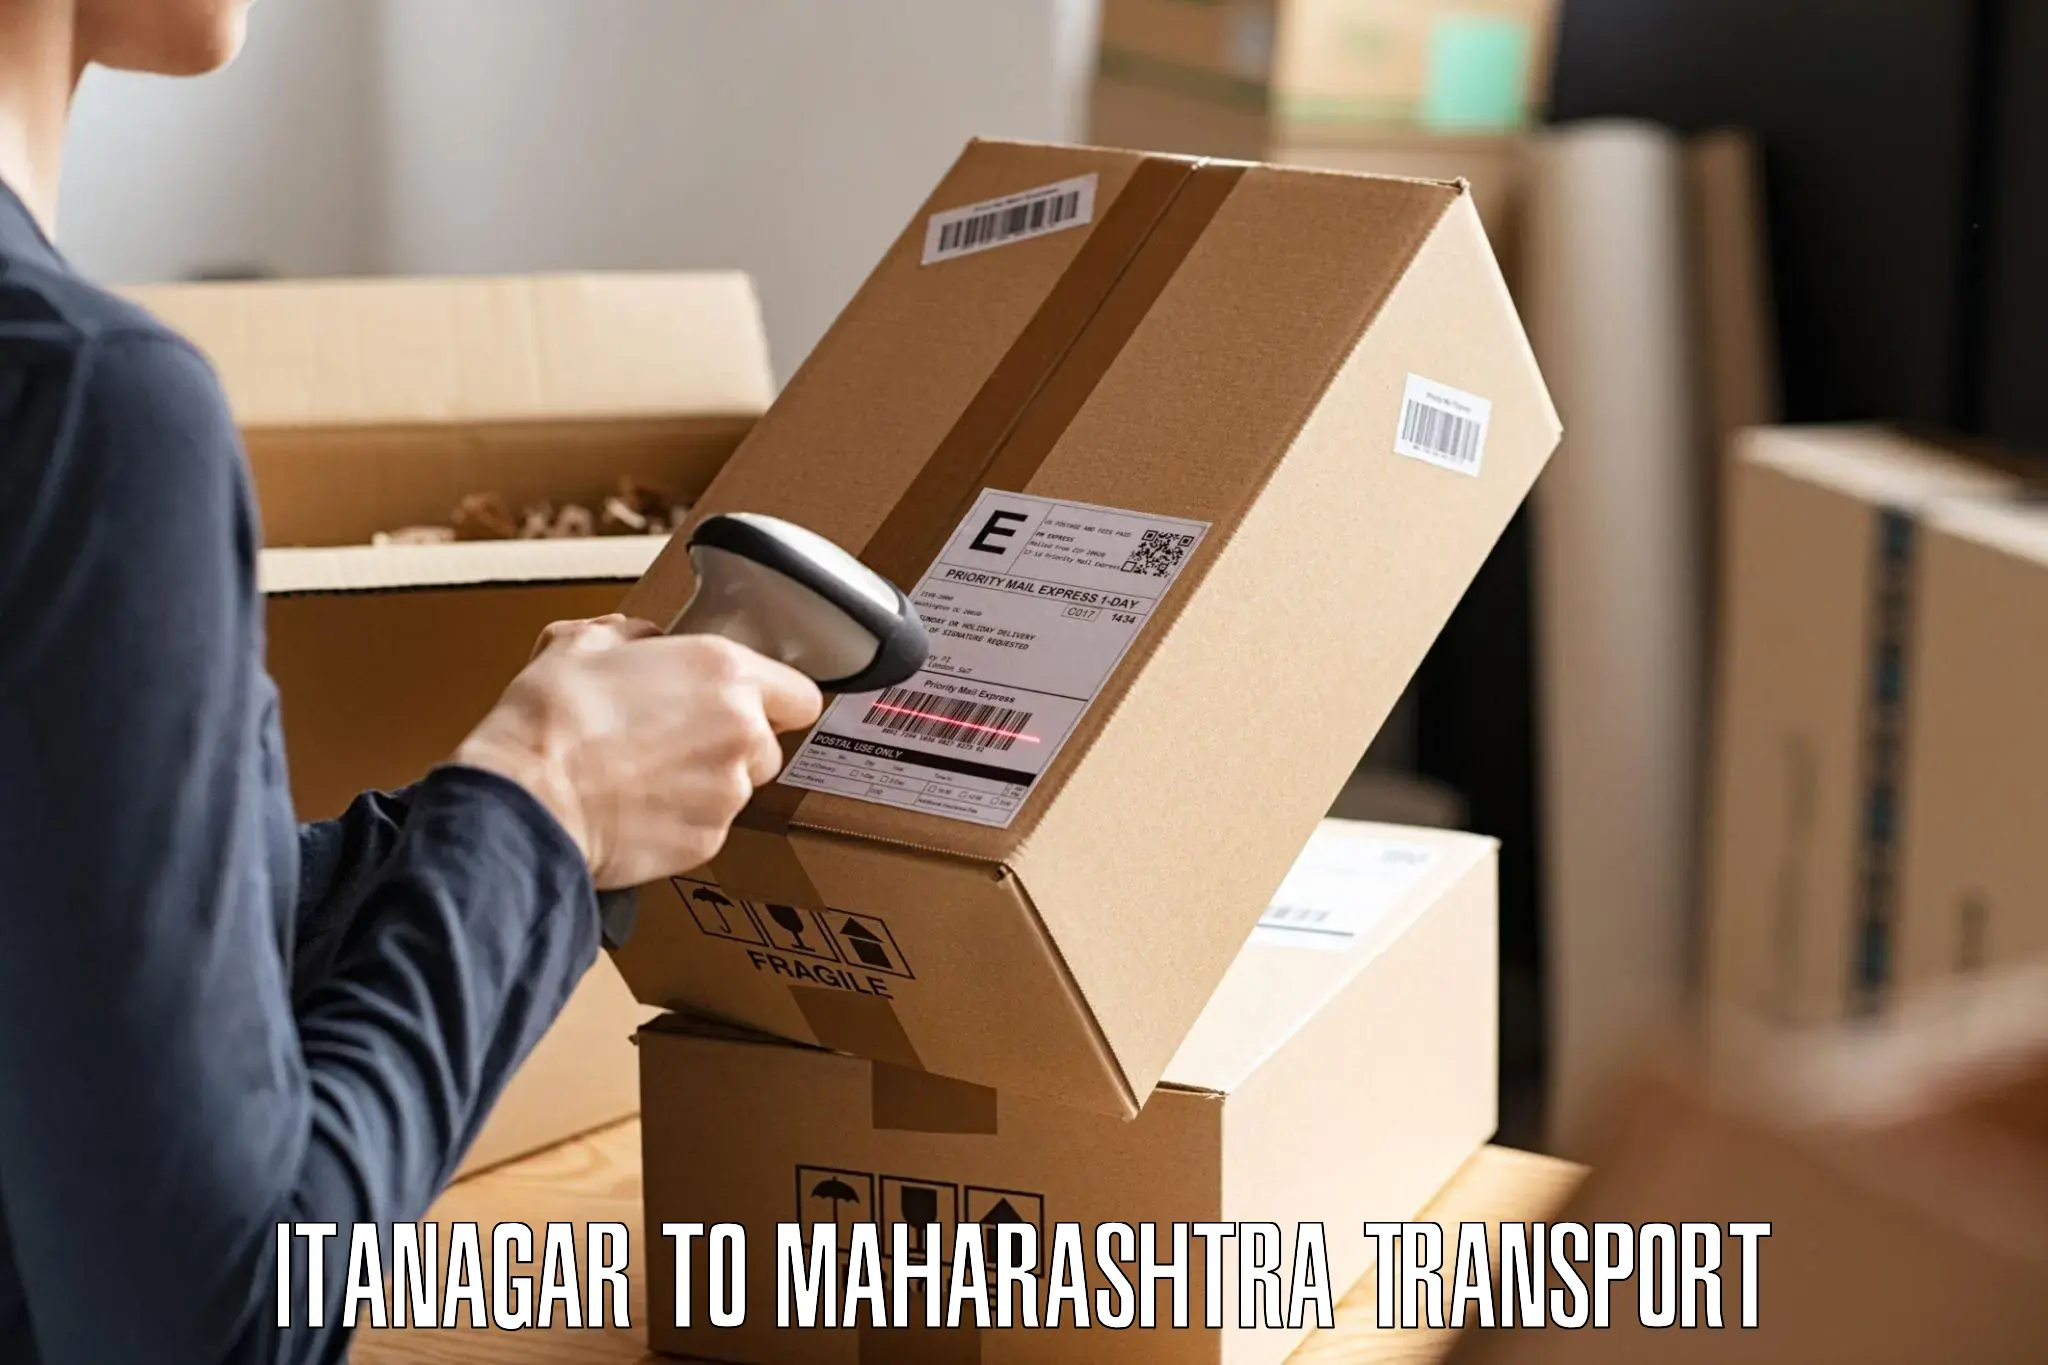 Nearby transport service Itanagar to Maharashtra